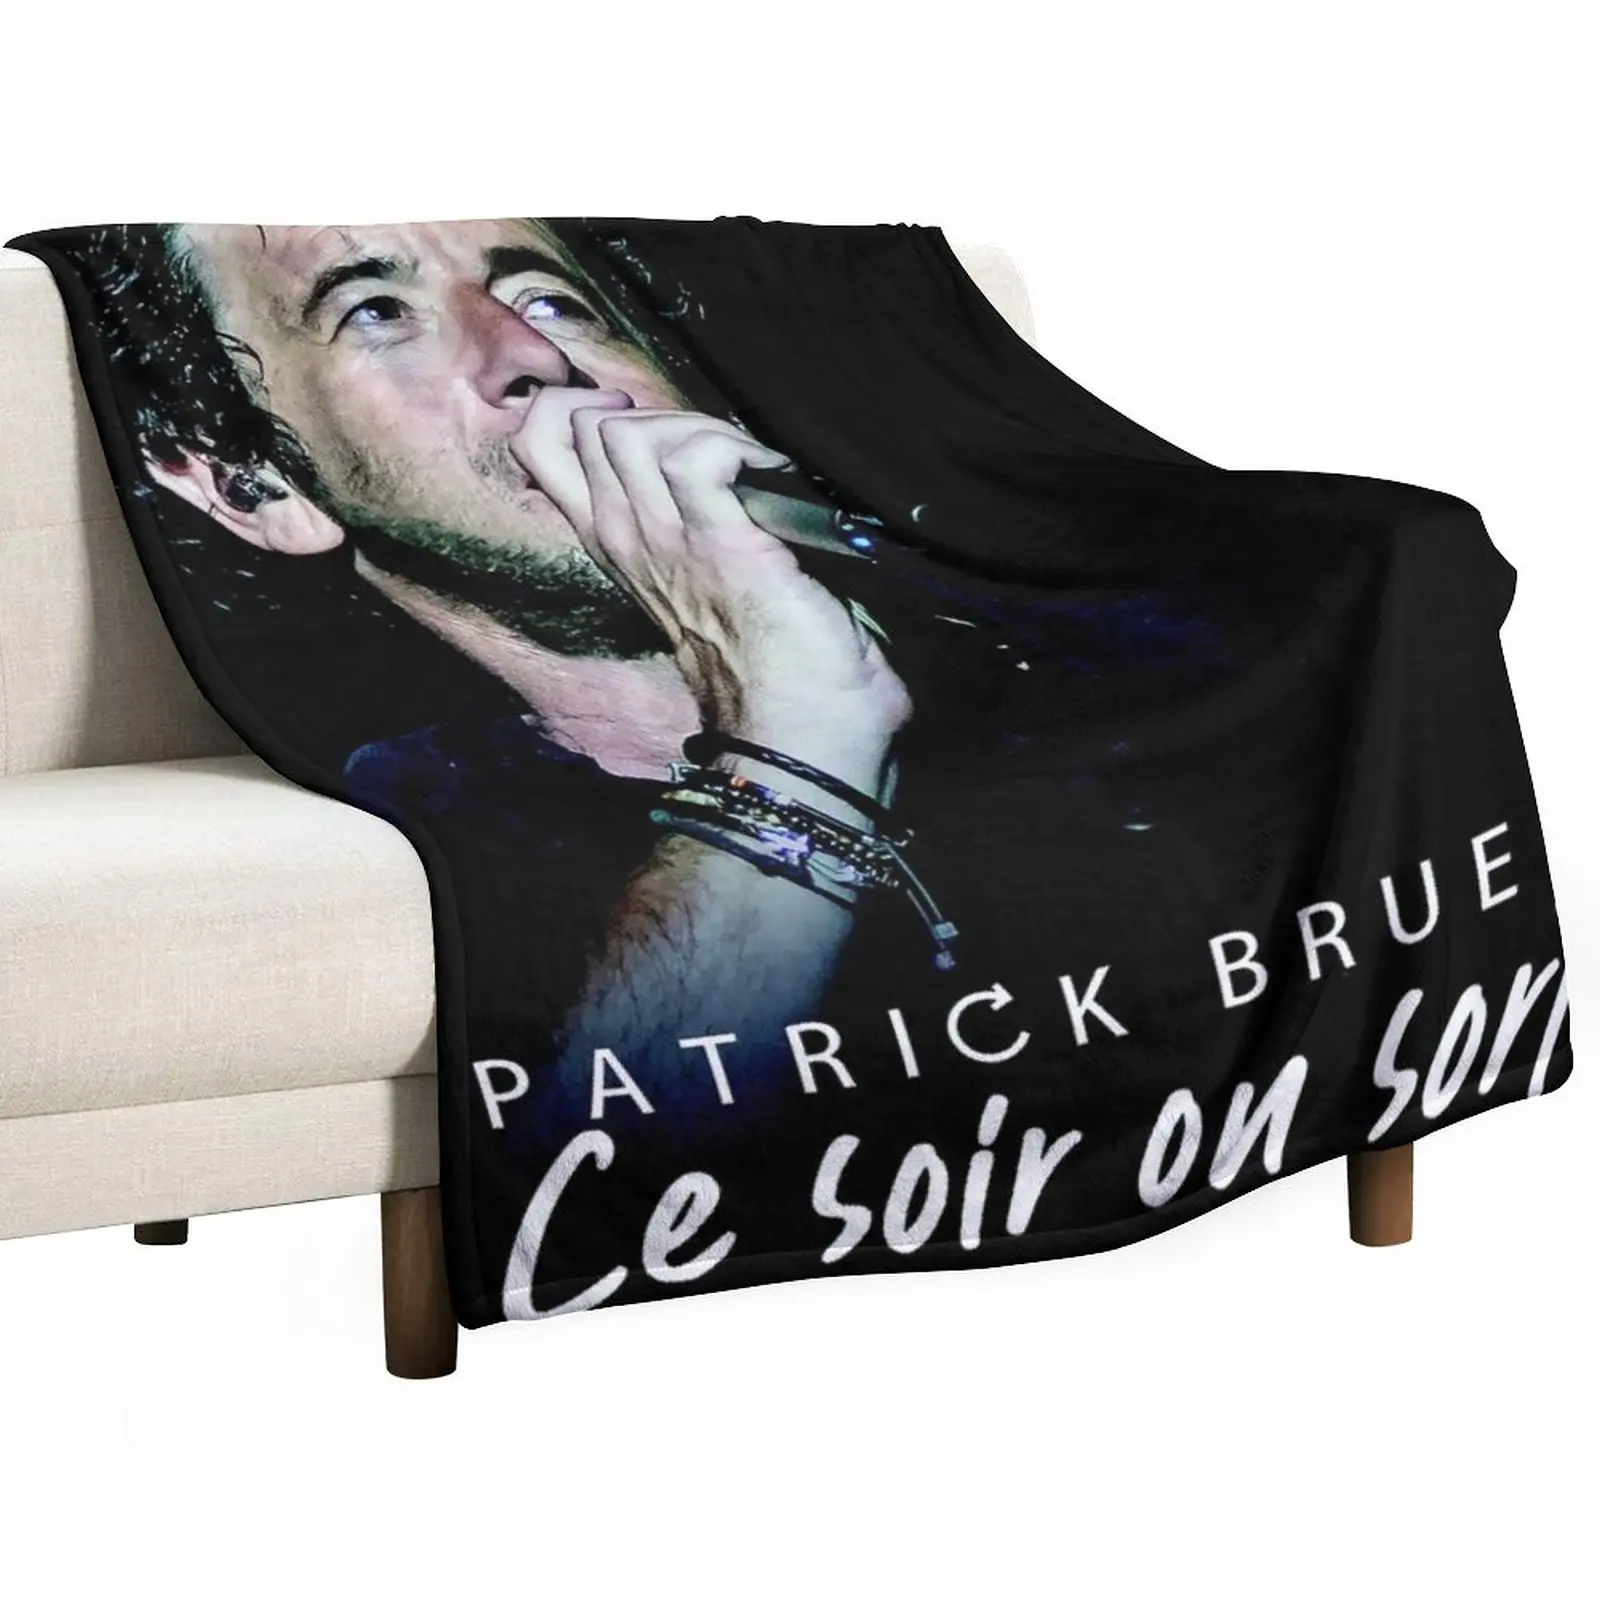 Onerel Show Bruel Ce в Американском турне Sort 2020 Плед, покрывало для сна, диван, Пушистое Мохнатое одеяло, покрывало для ребенка